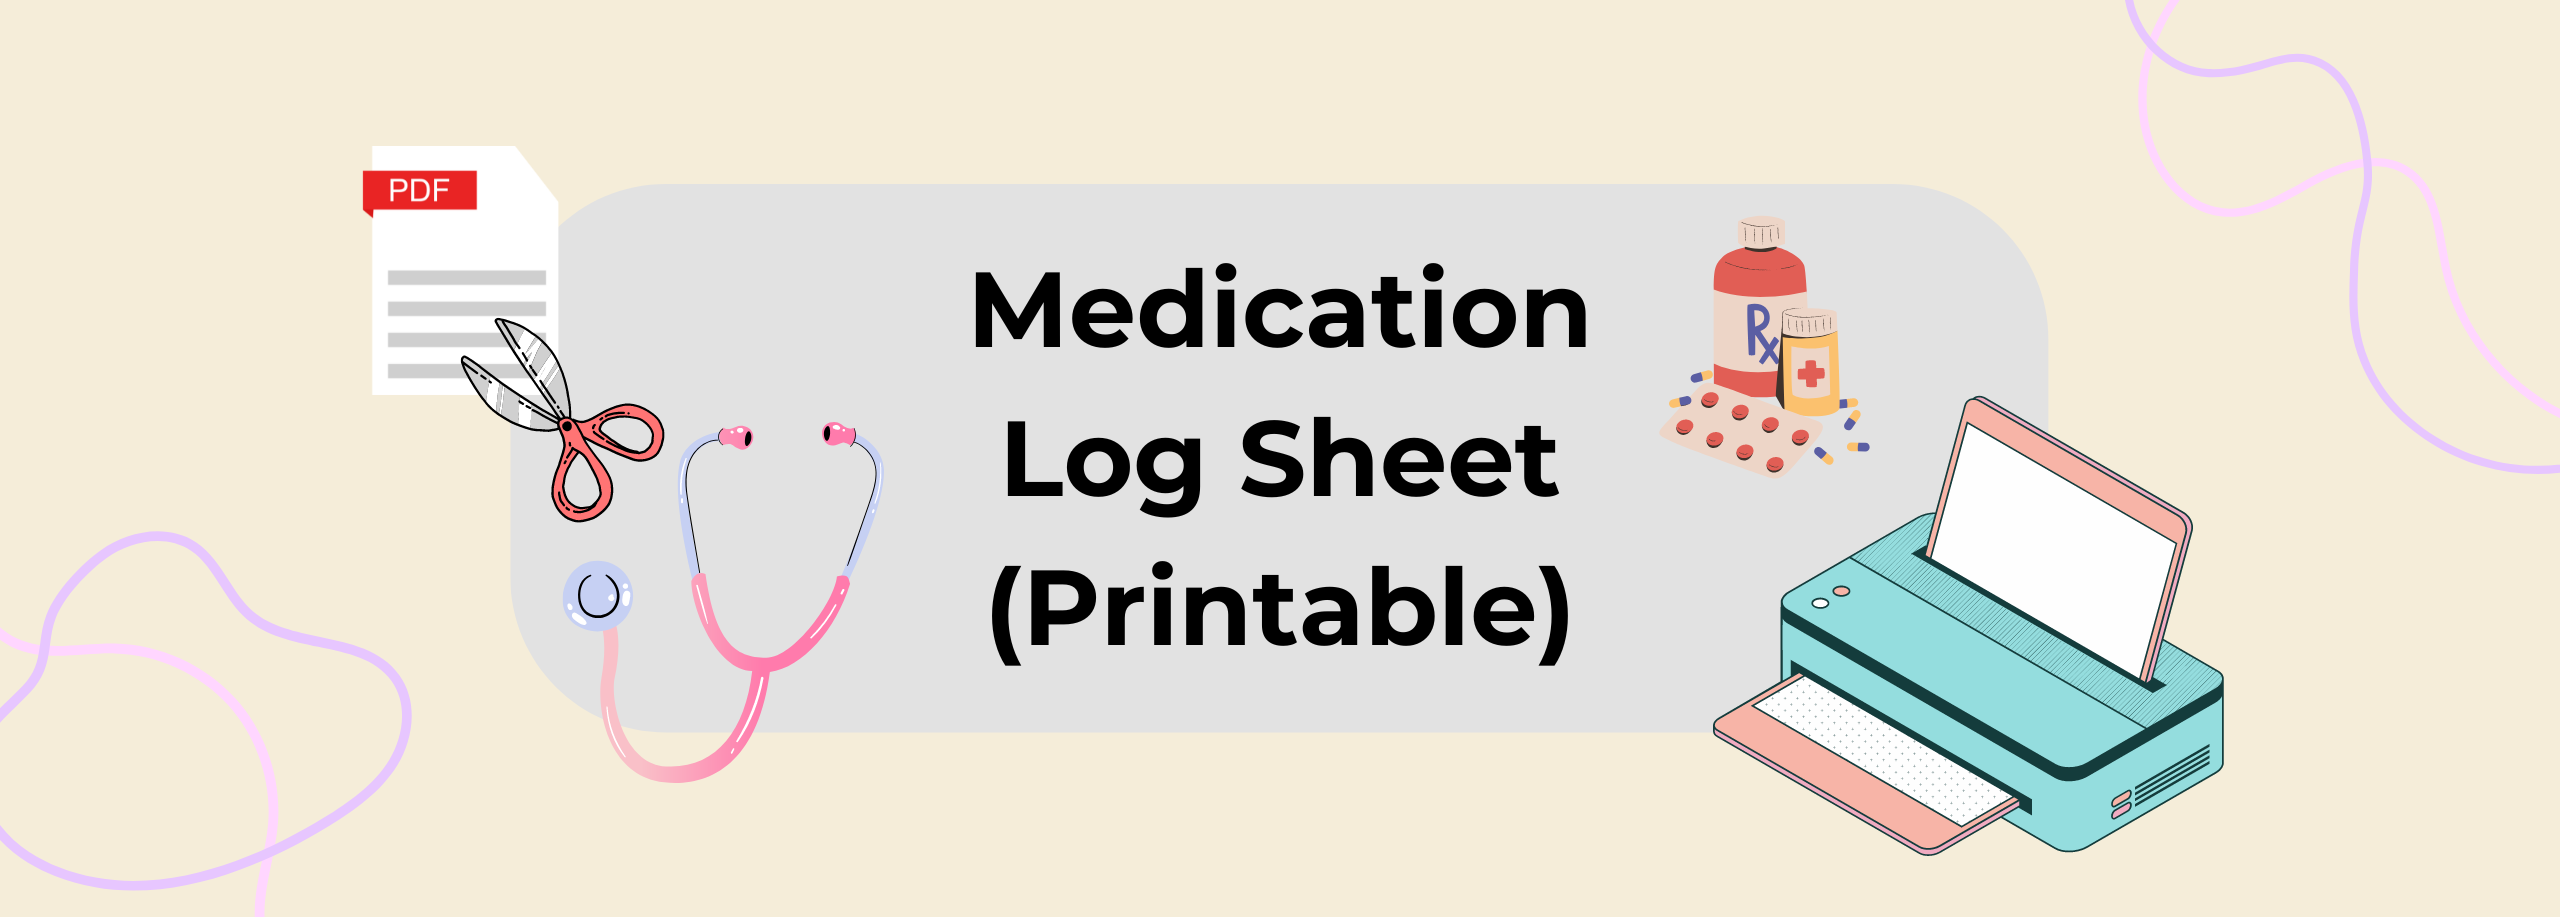 medication log sheet